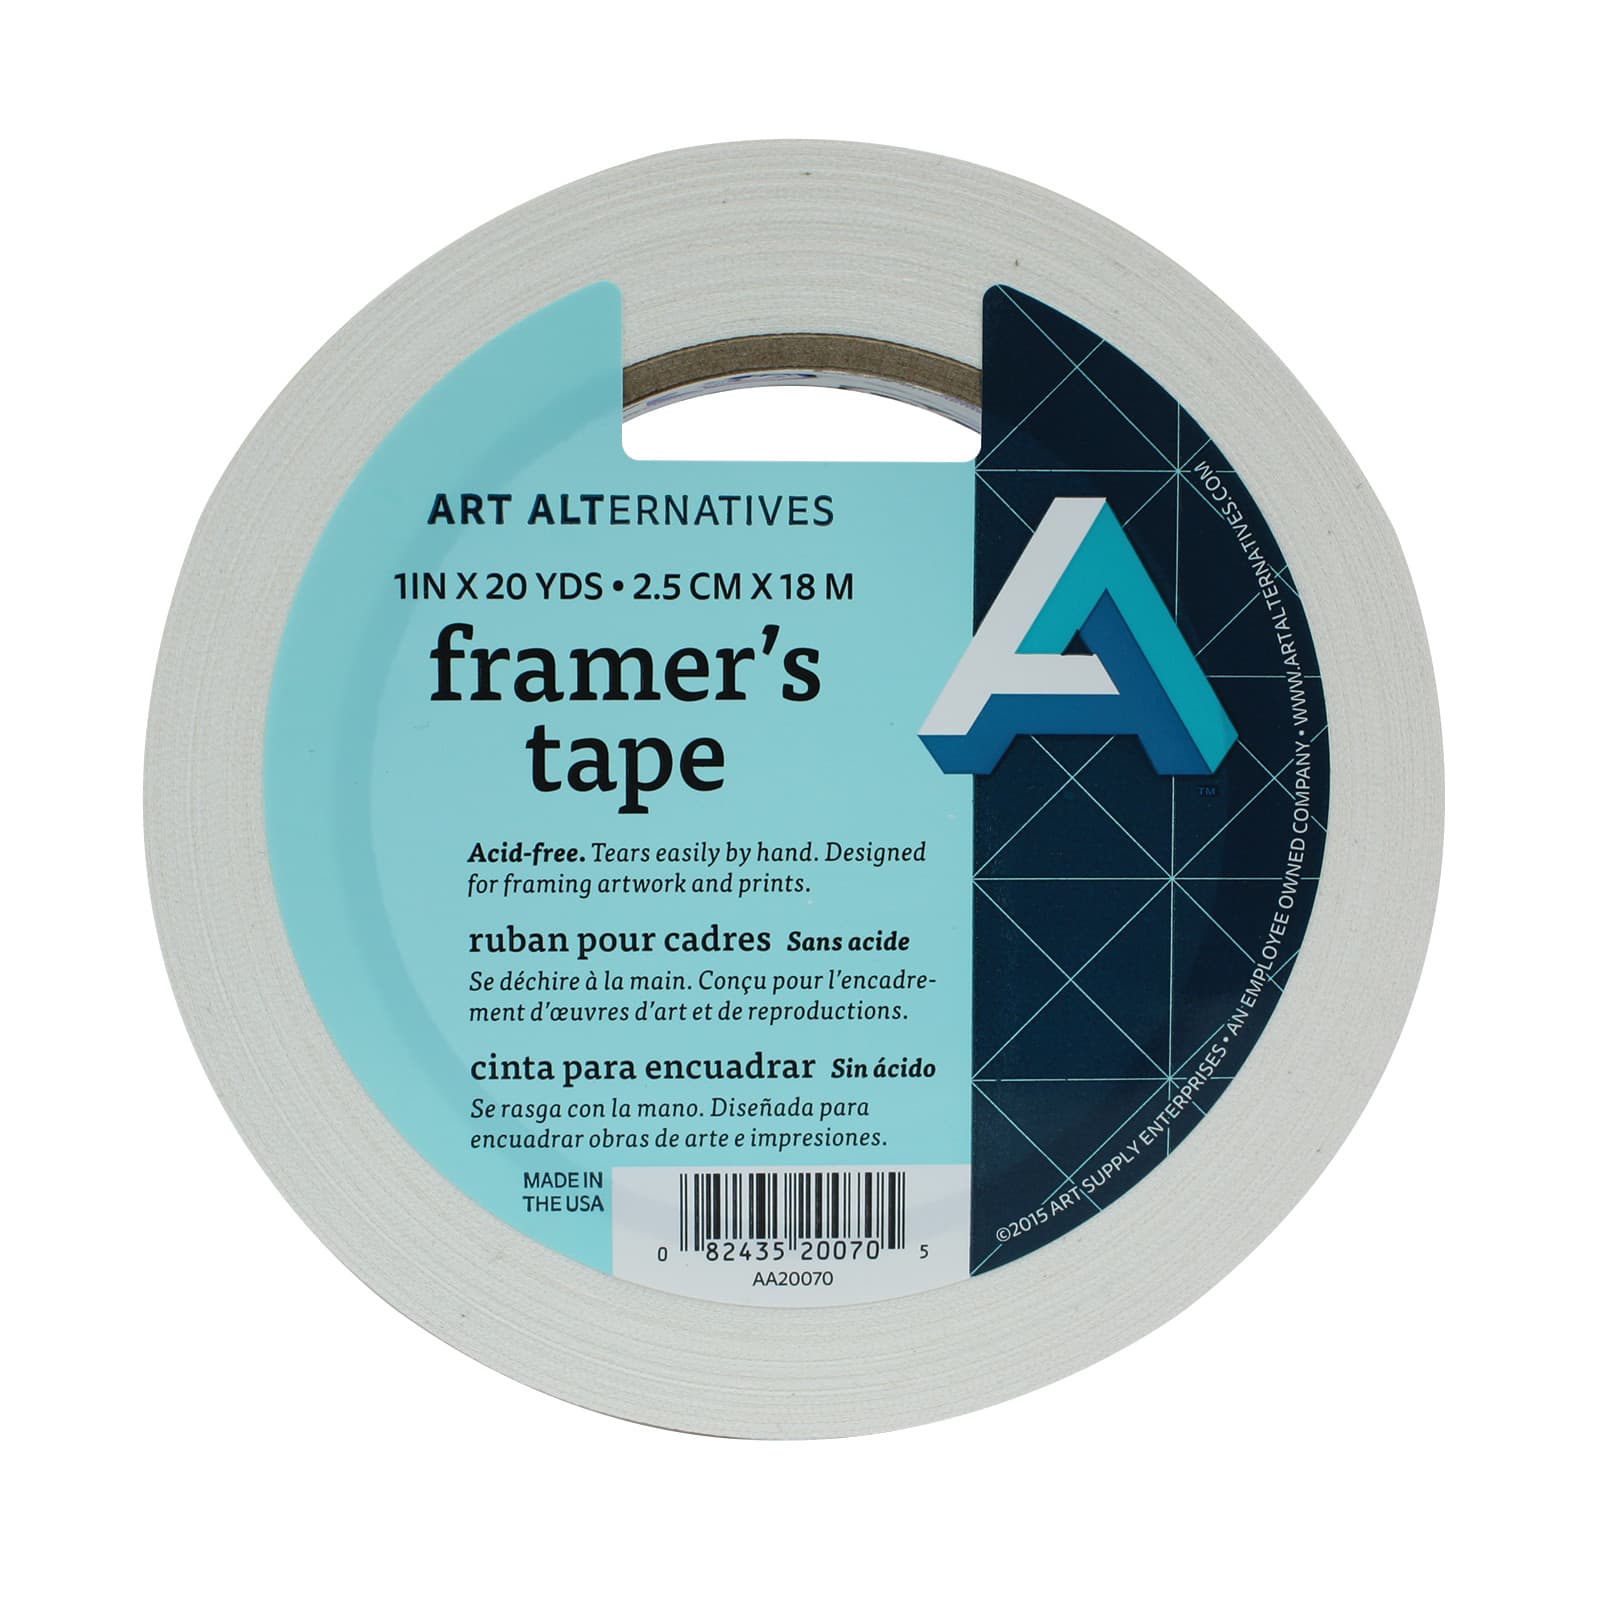 Art Alternatives Framer's Tape